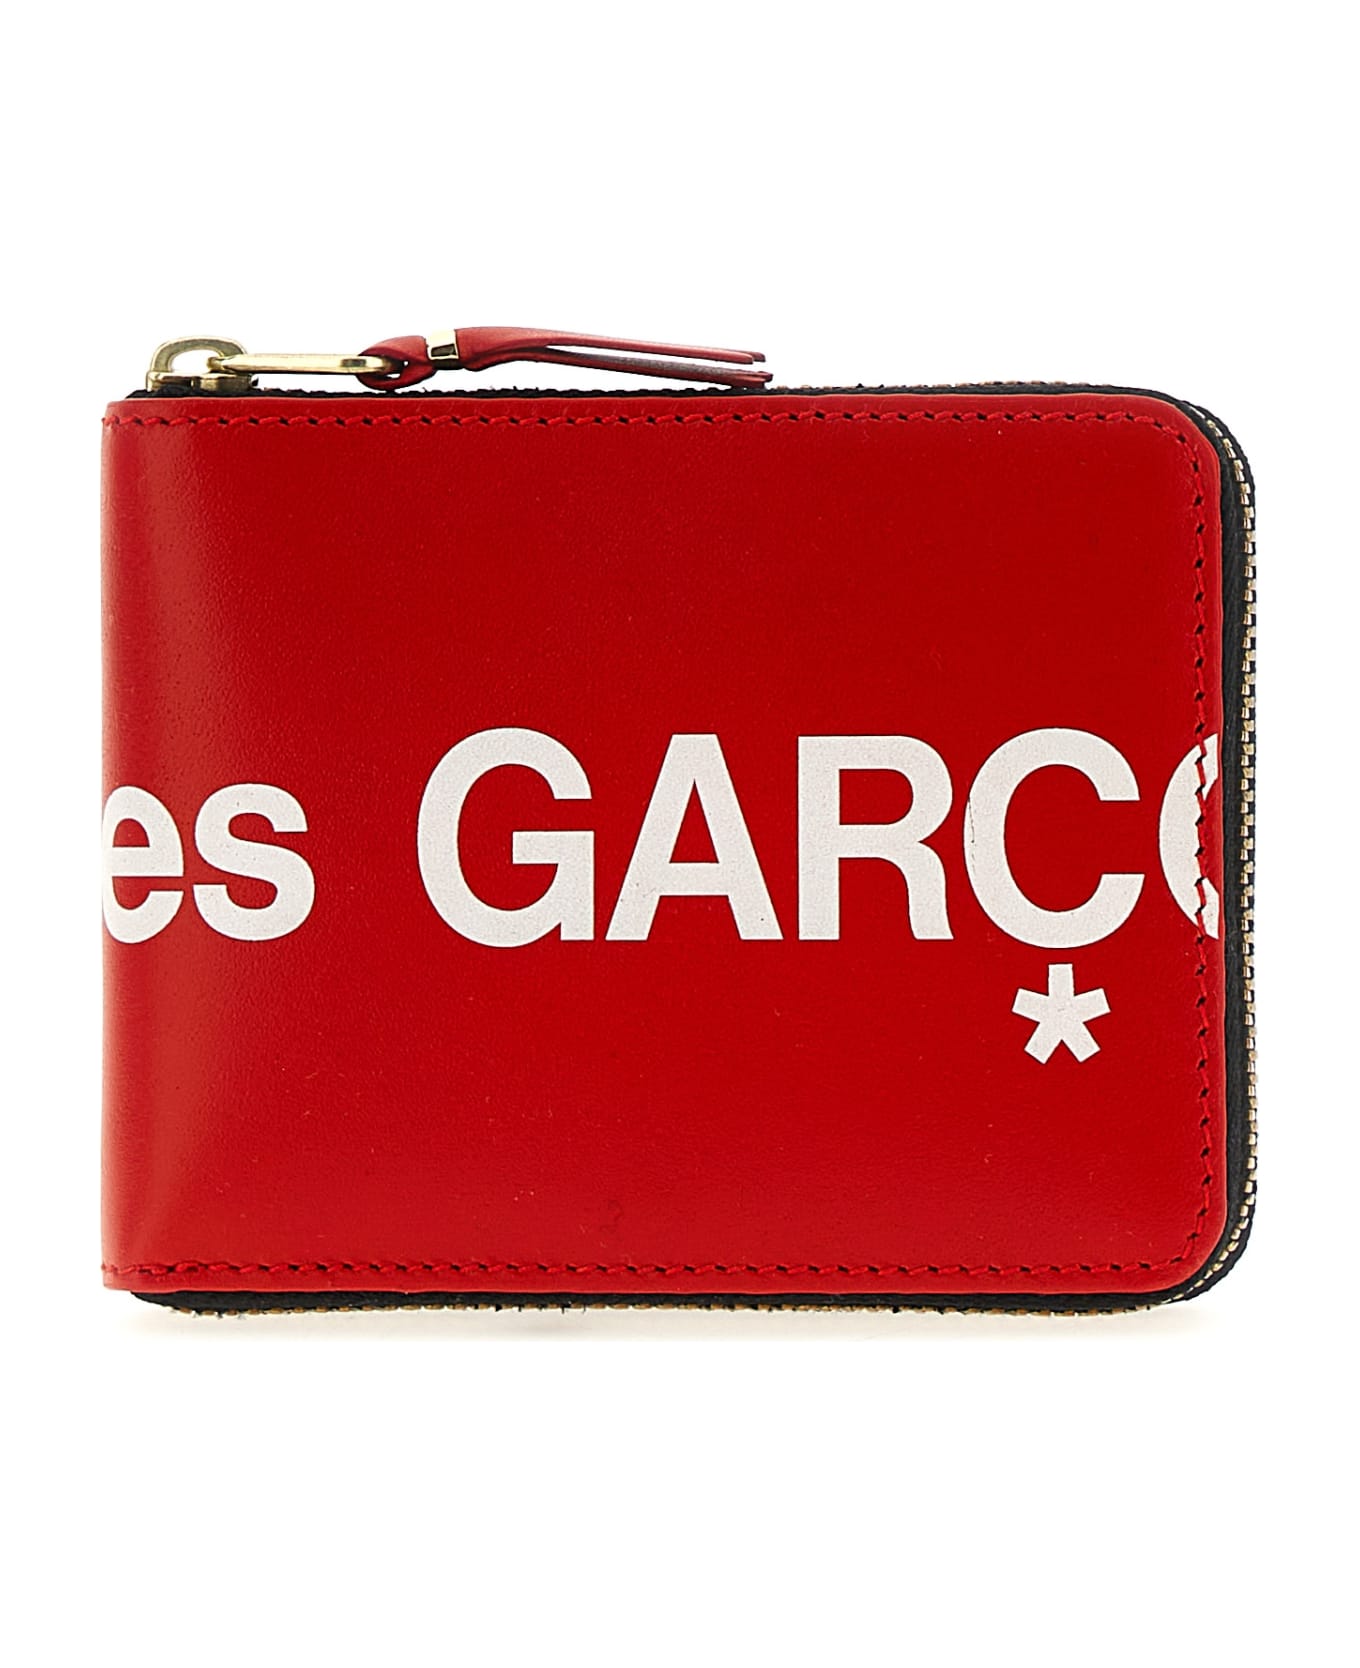 Comme des Garçons Wallet 'huge Logo' Wallet - Red